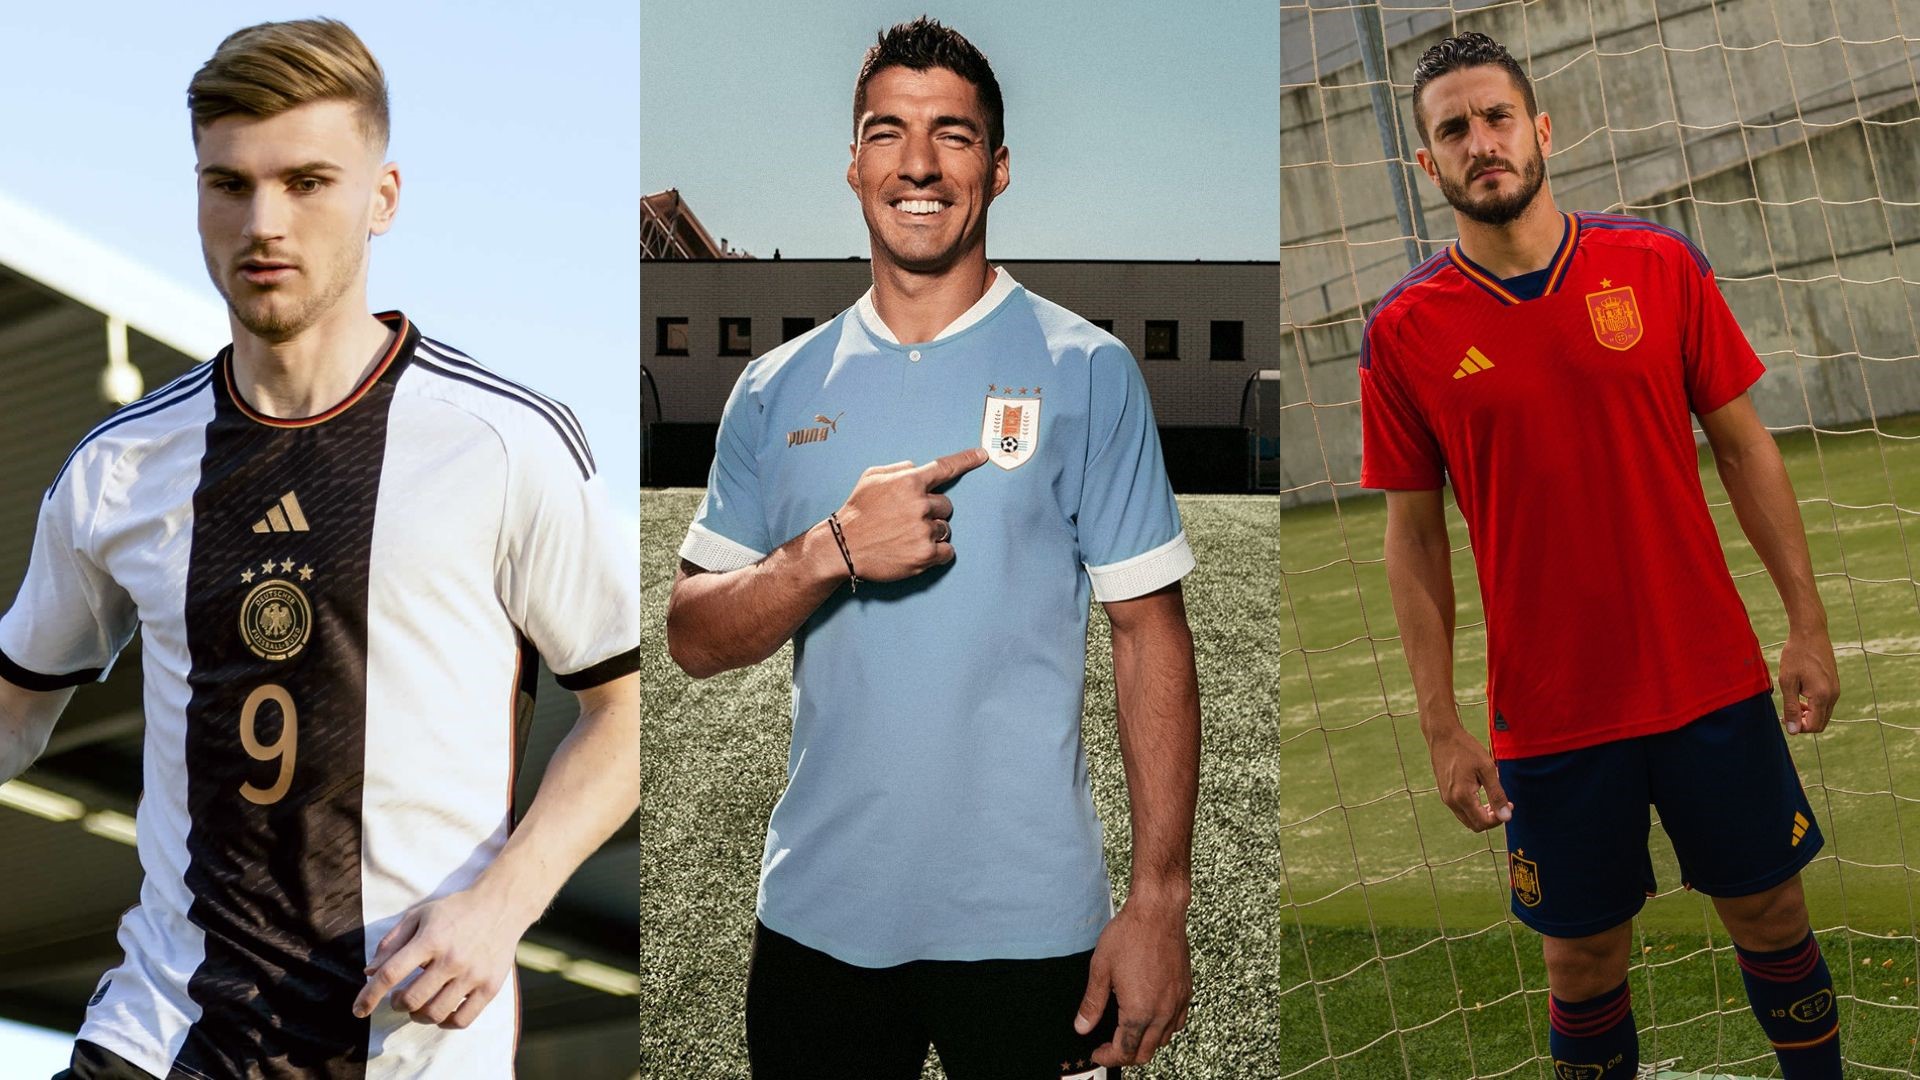 Equipaciones De Futbol Para Niños España 2021 Alvaro Morata 7 Camiseta  Segunda